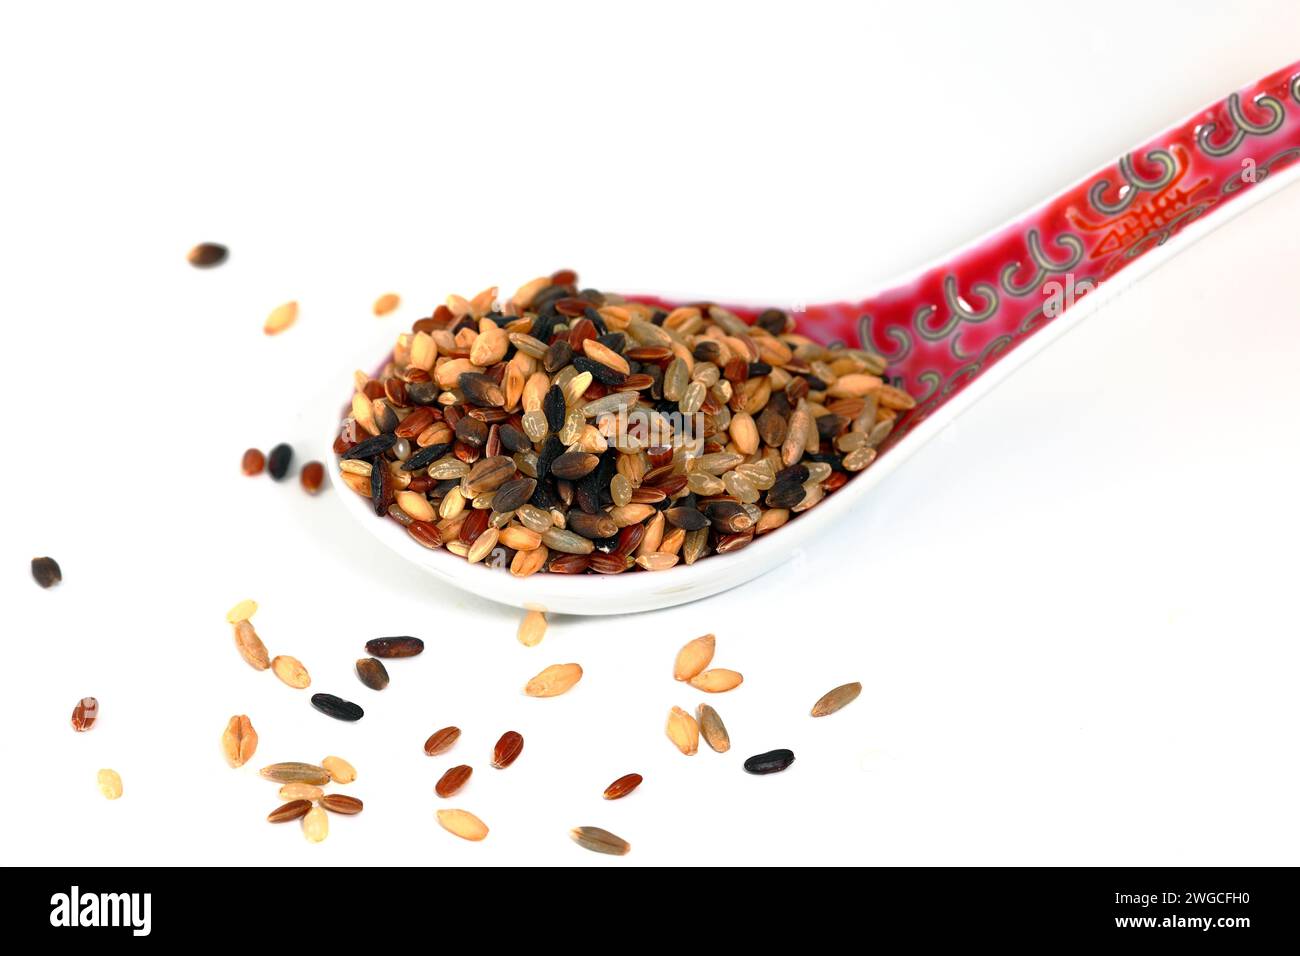 Une cuillère à soupe de riz rouge 6 grains, riz noir 榖米, orge pourpre, orge sans coque, beries de seigle, riz rouge, riz brun isolé sur fond blanc. Banque D'Images